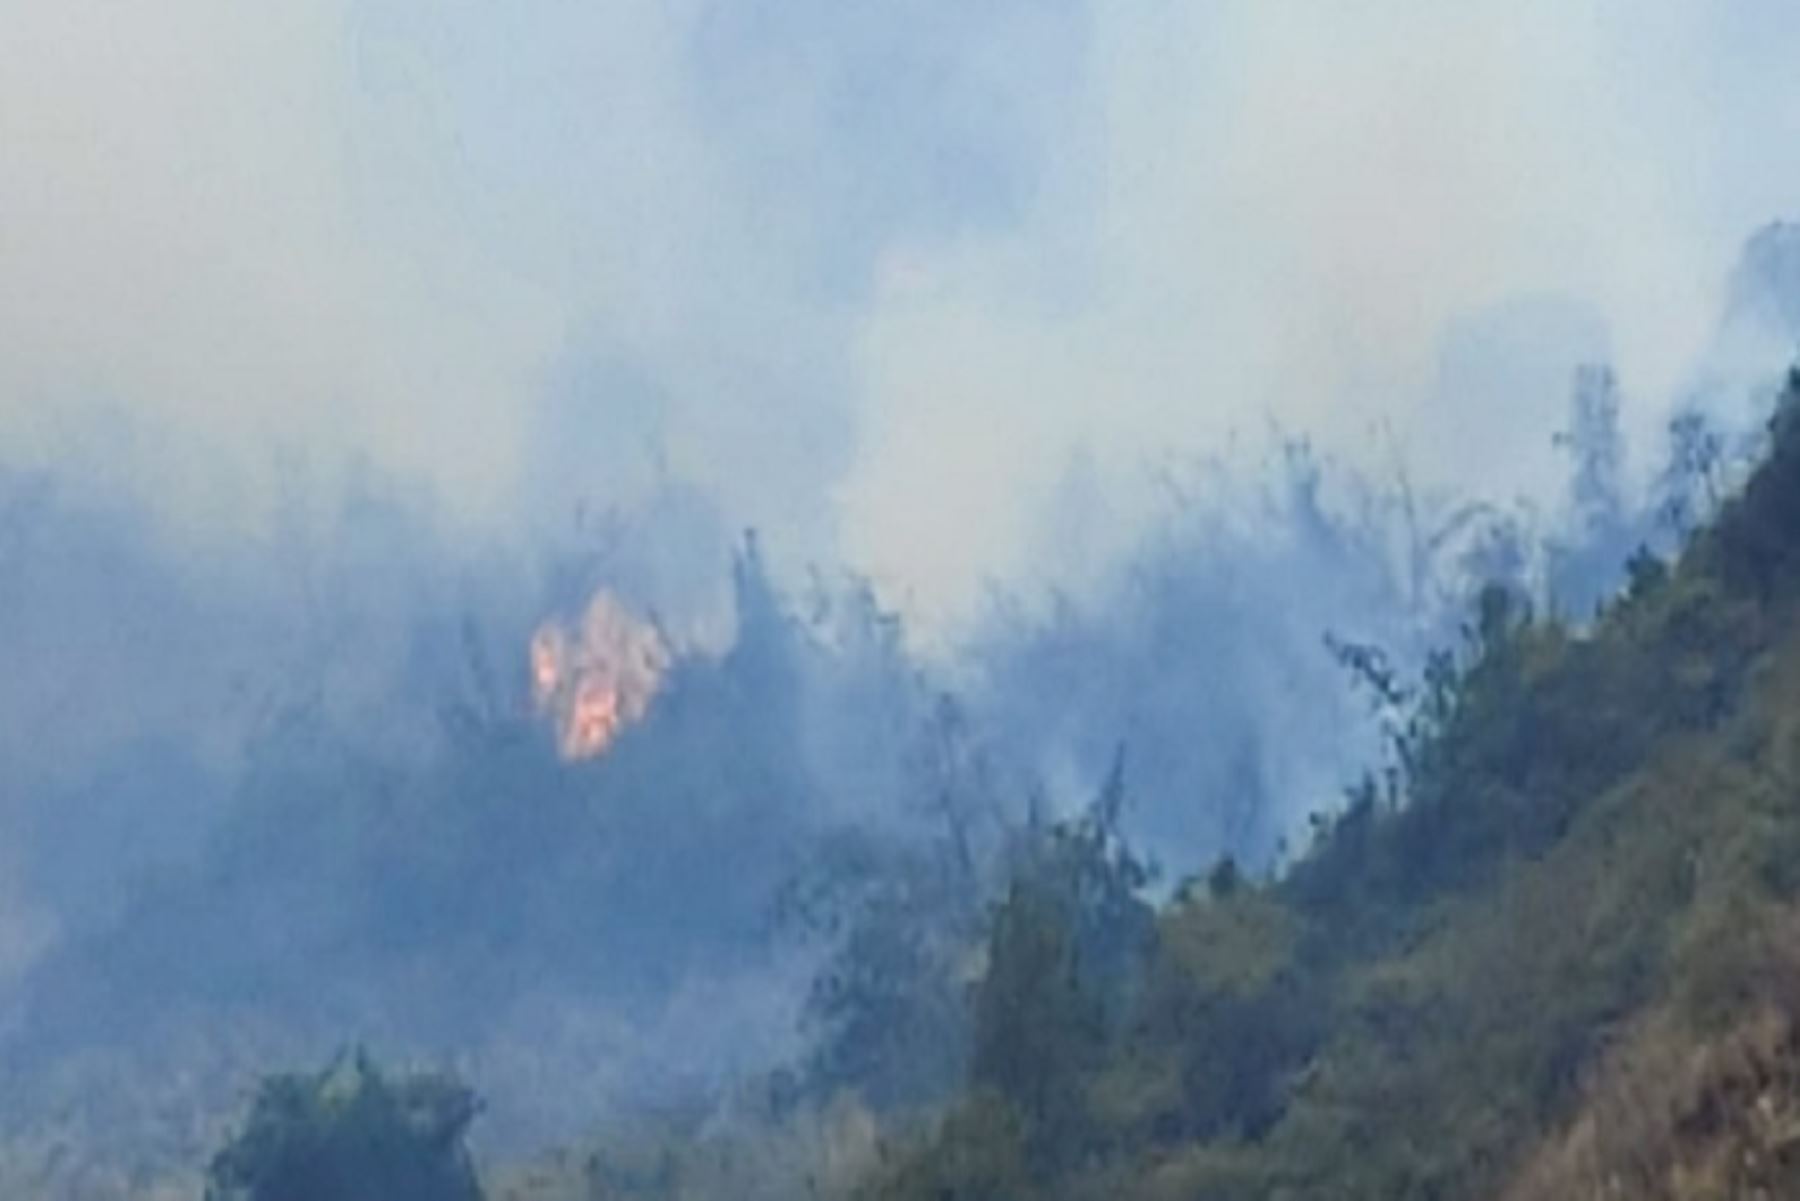 Los incendios forestales empezaron la tarde de ayer y hasta ahora no han podido ser controlados del todo.